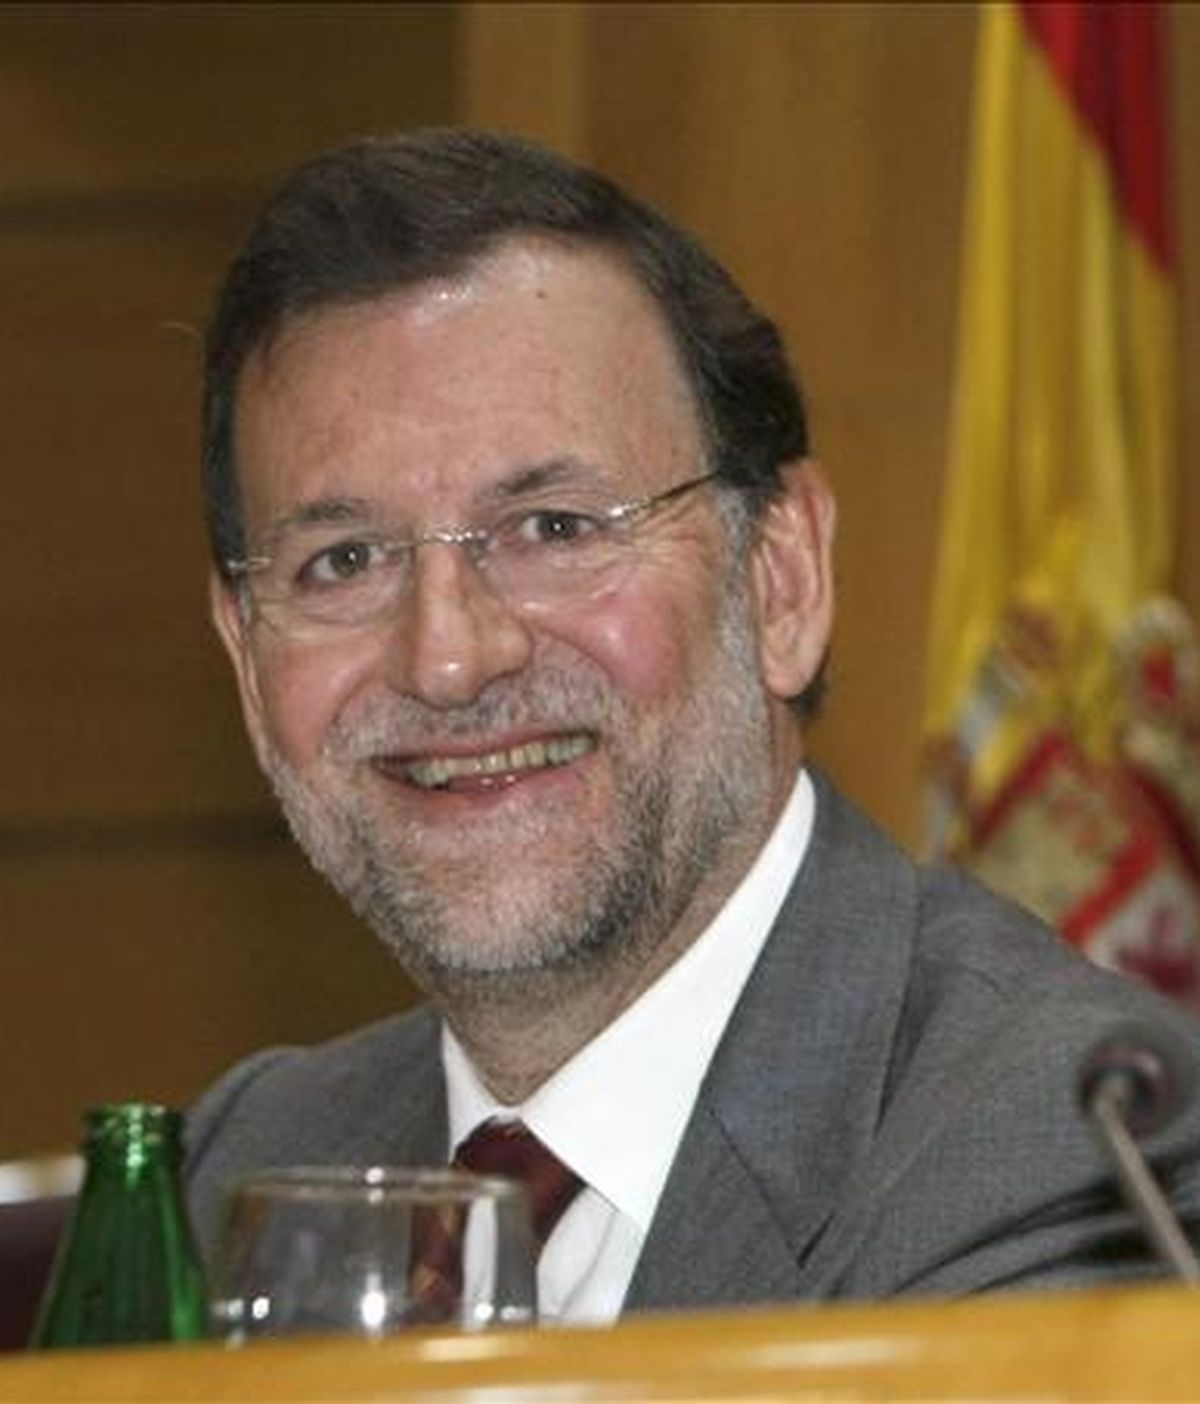 El presidente del PP, Mariano Rajoy, ha asegurado que la gran preocupación de Trillo es que "sancionen a sus colaboradores". Vídeo: ATLAS